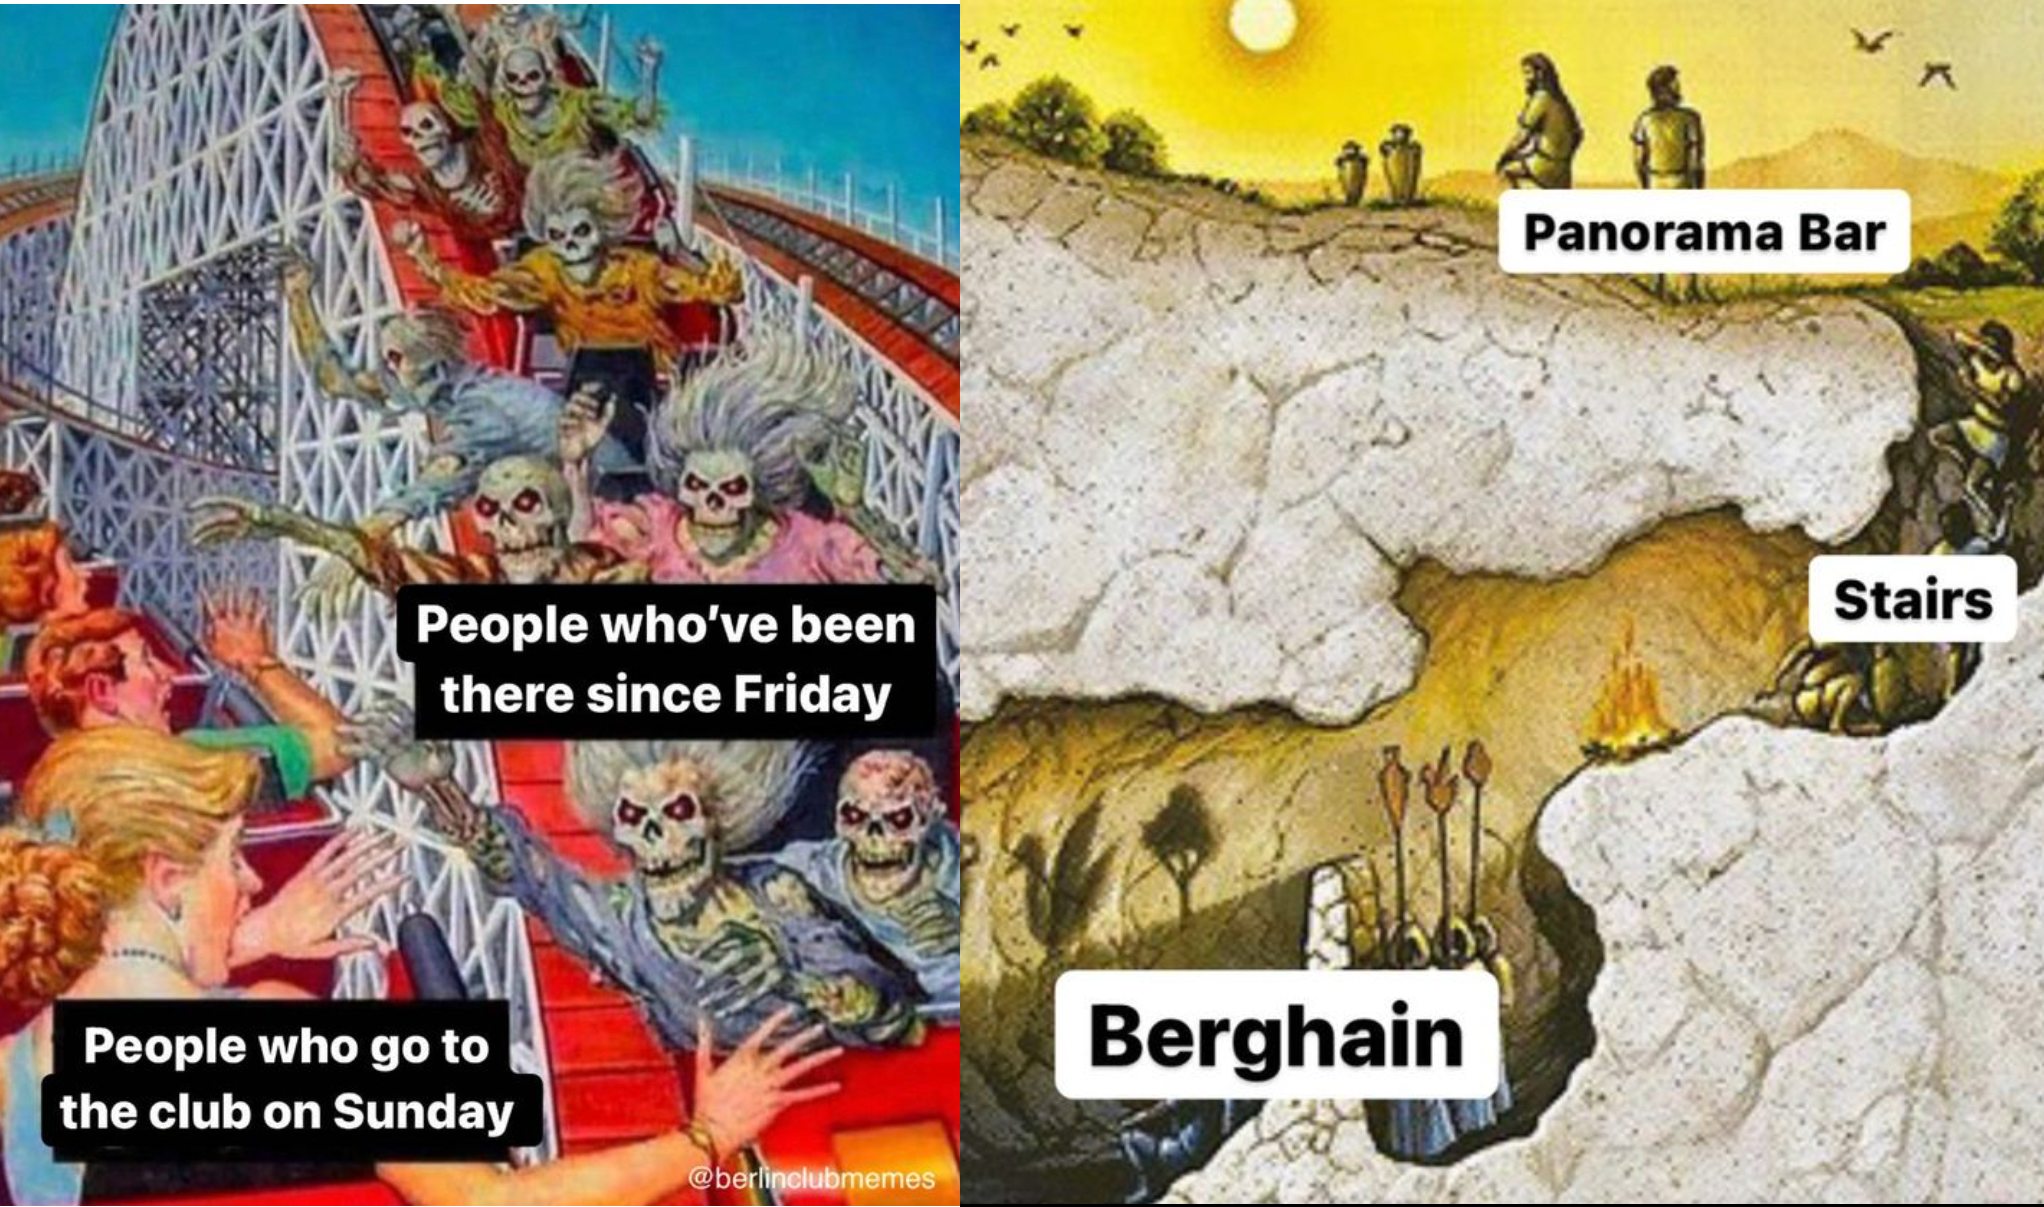 Bei Berlin Club Memes geht's oft ums Berghain. 